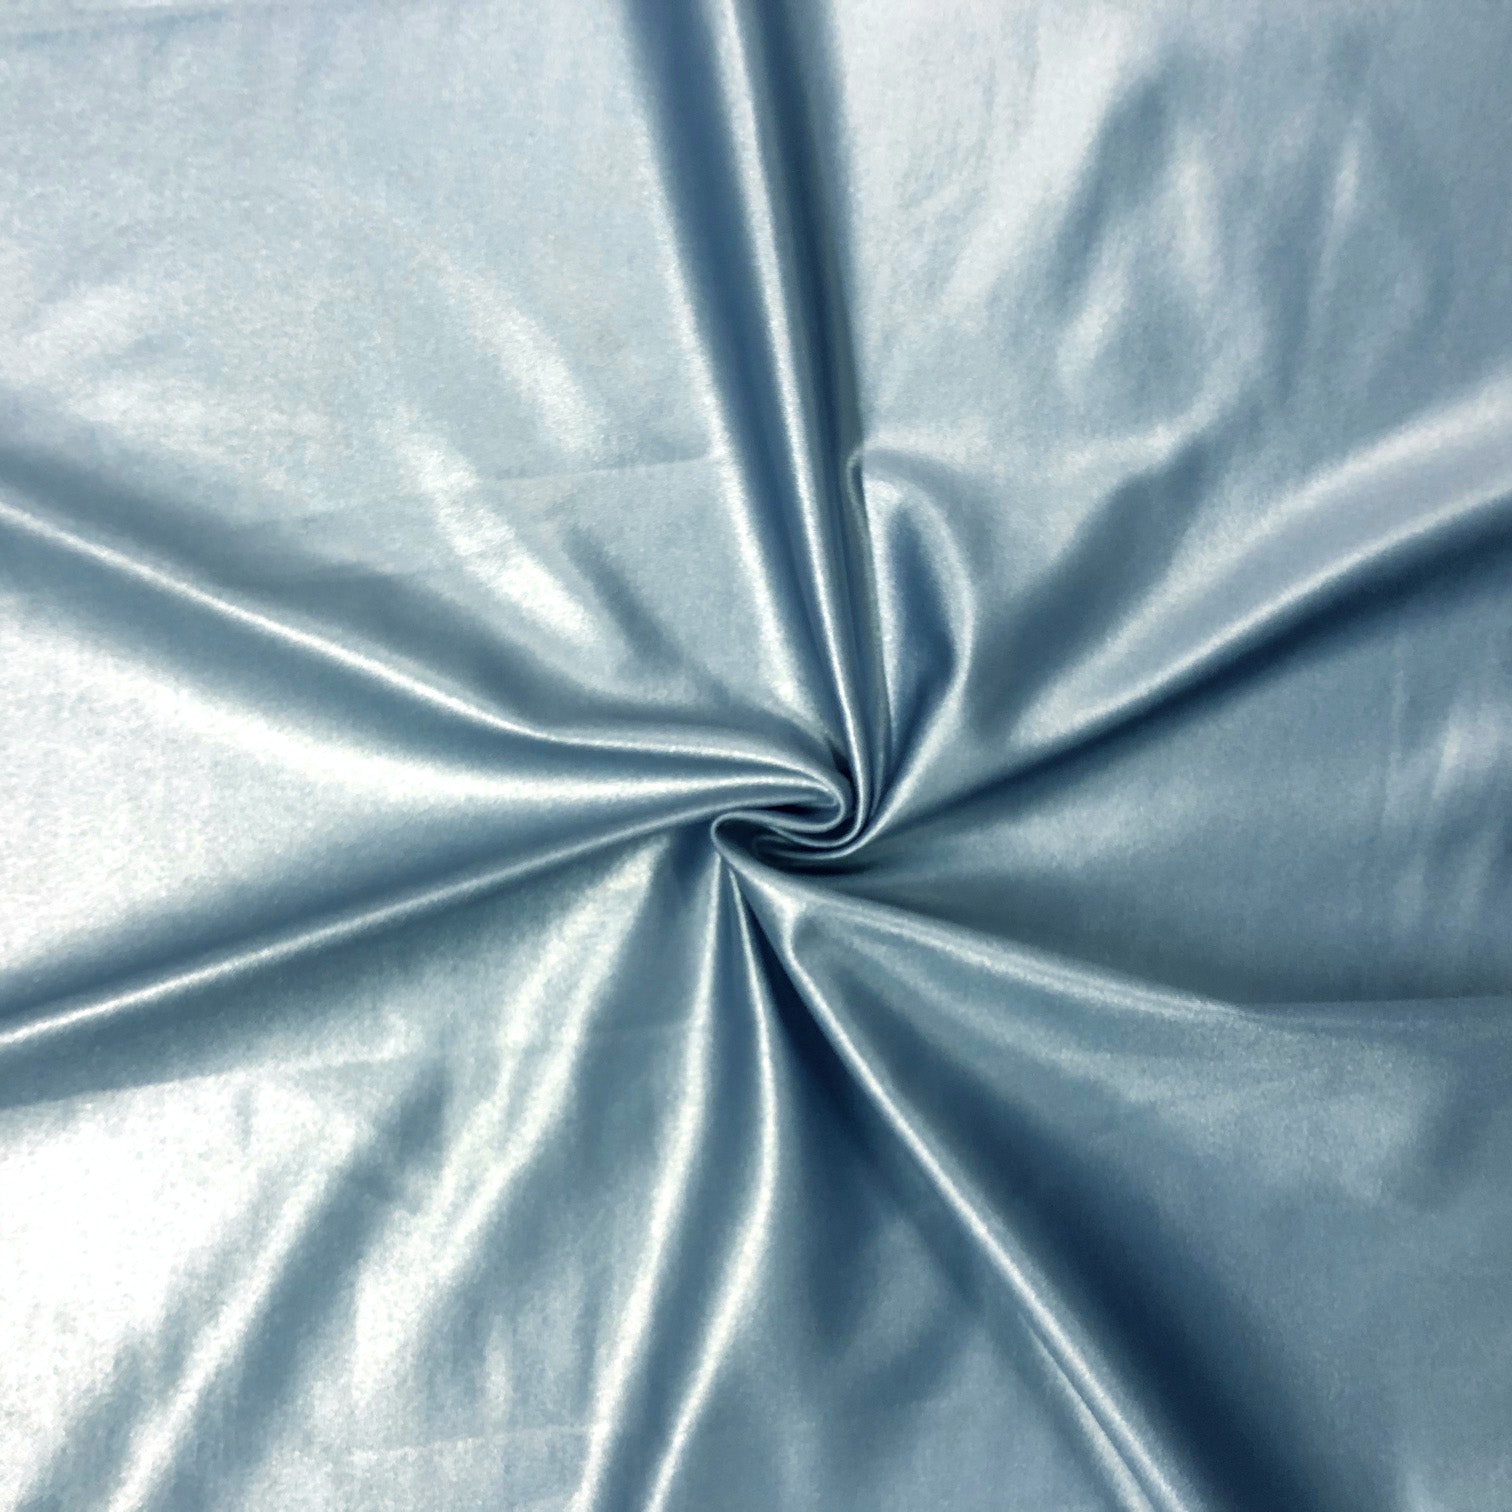 Liquid Lucid Ciré Amparo Blue Nylon Spandex Swimsuit Fabric – The